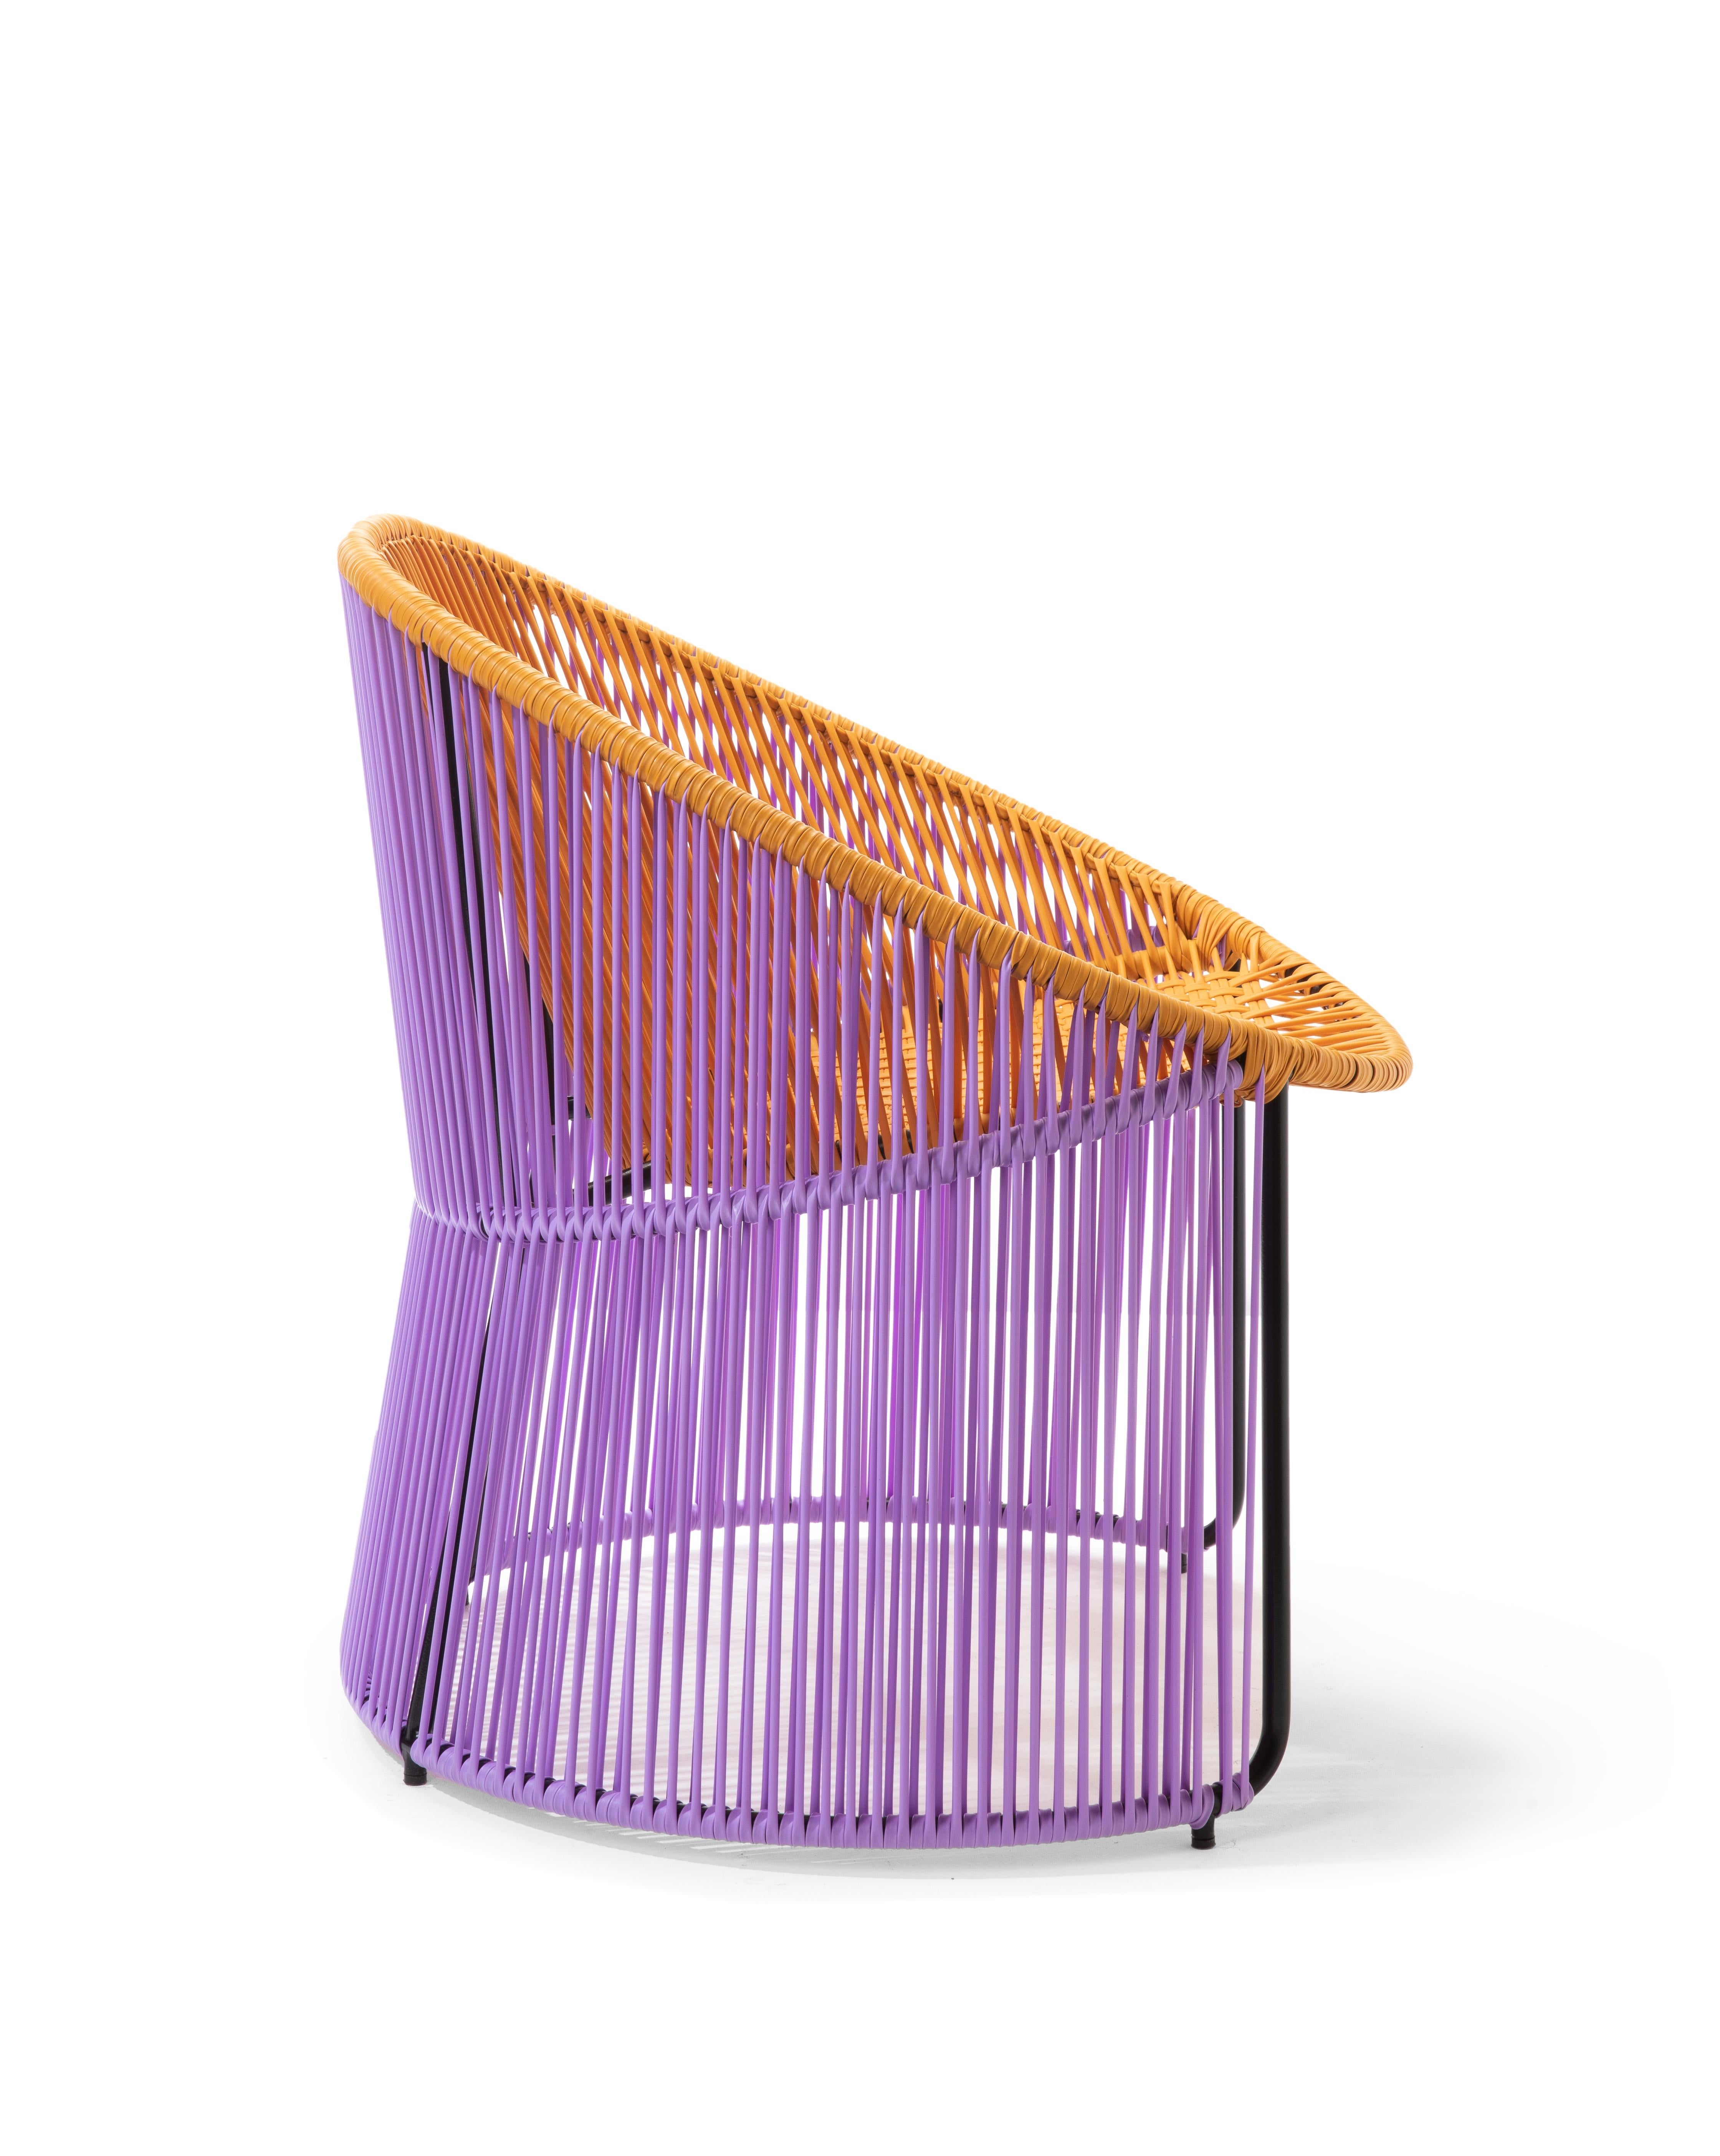 German Set of 2 Honey Cartagenas Lounge Chair by Sebastian Herkner For Sale